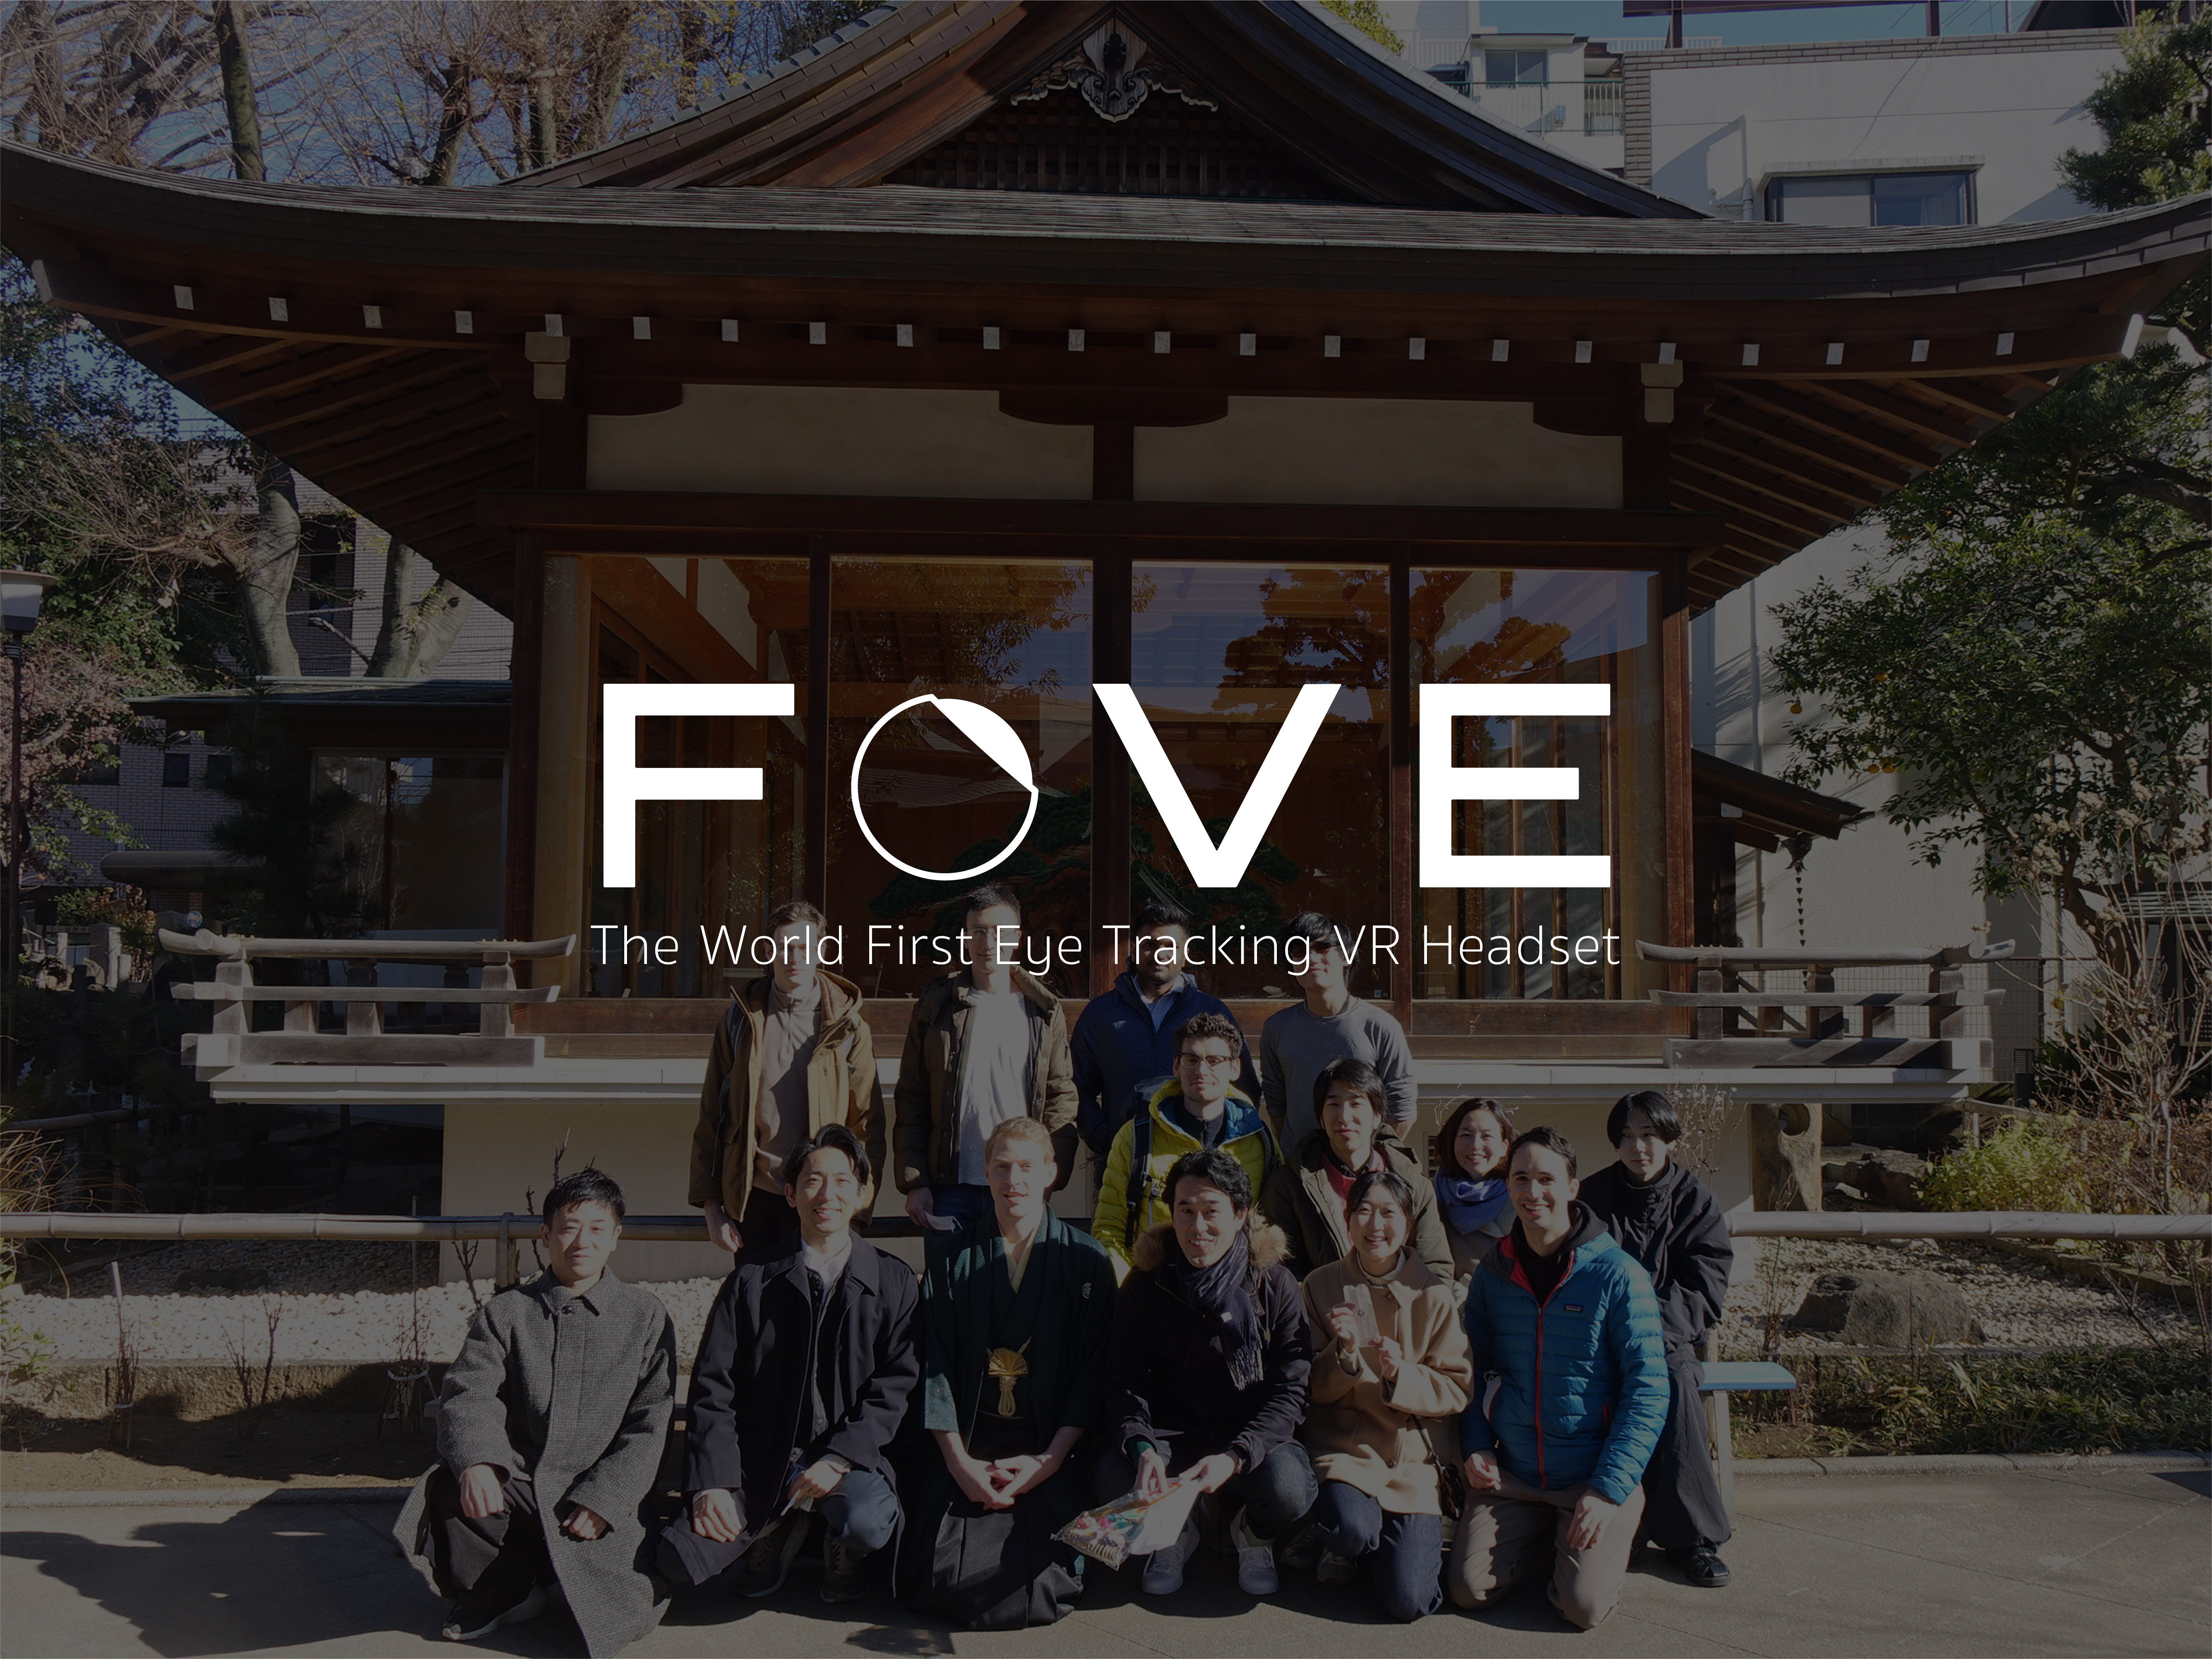 同社は、世界初の視線追跡型VRヘッドマウントディスプレイ『FOVE 0（ゼロ）』を製造・販売するハードウェアスタートアップである。様々な国籍のメンバーが互いを尊重しながら、仕事に取り組む文化が形成されている。